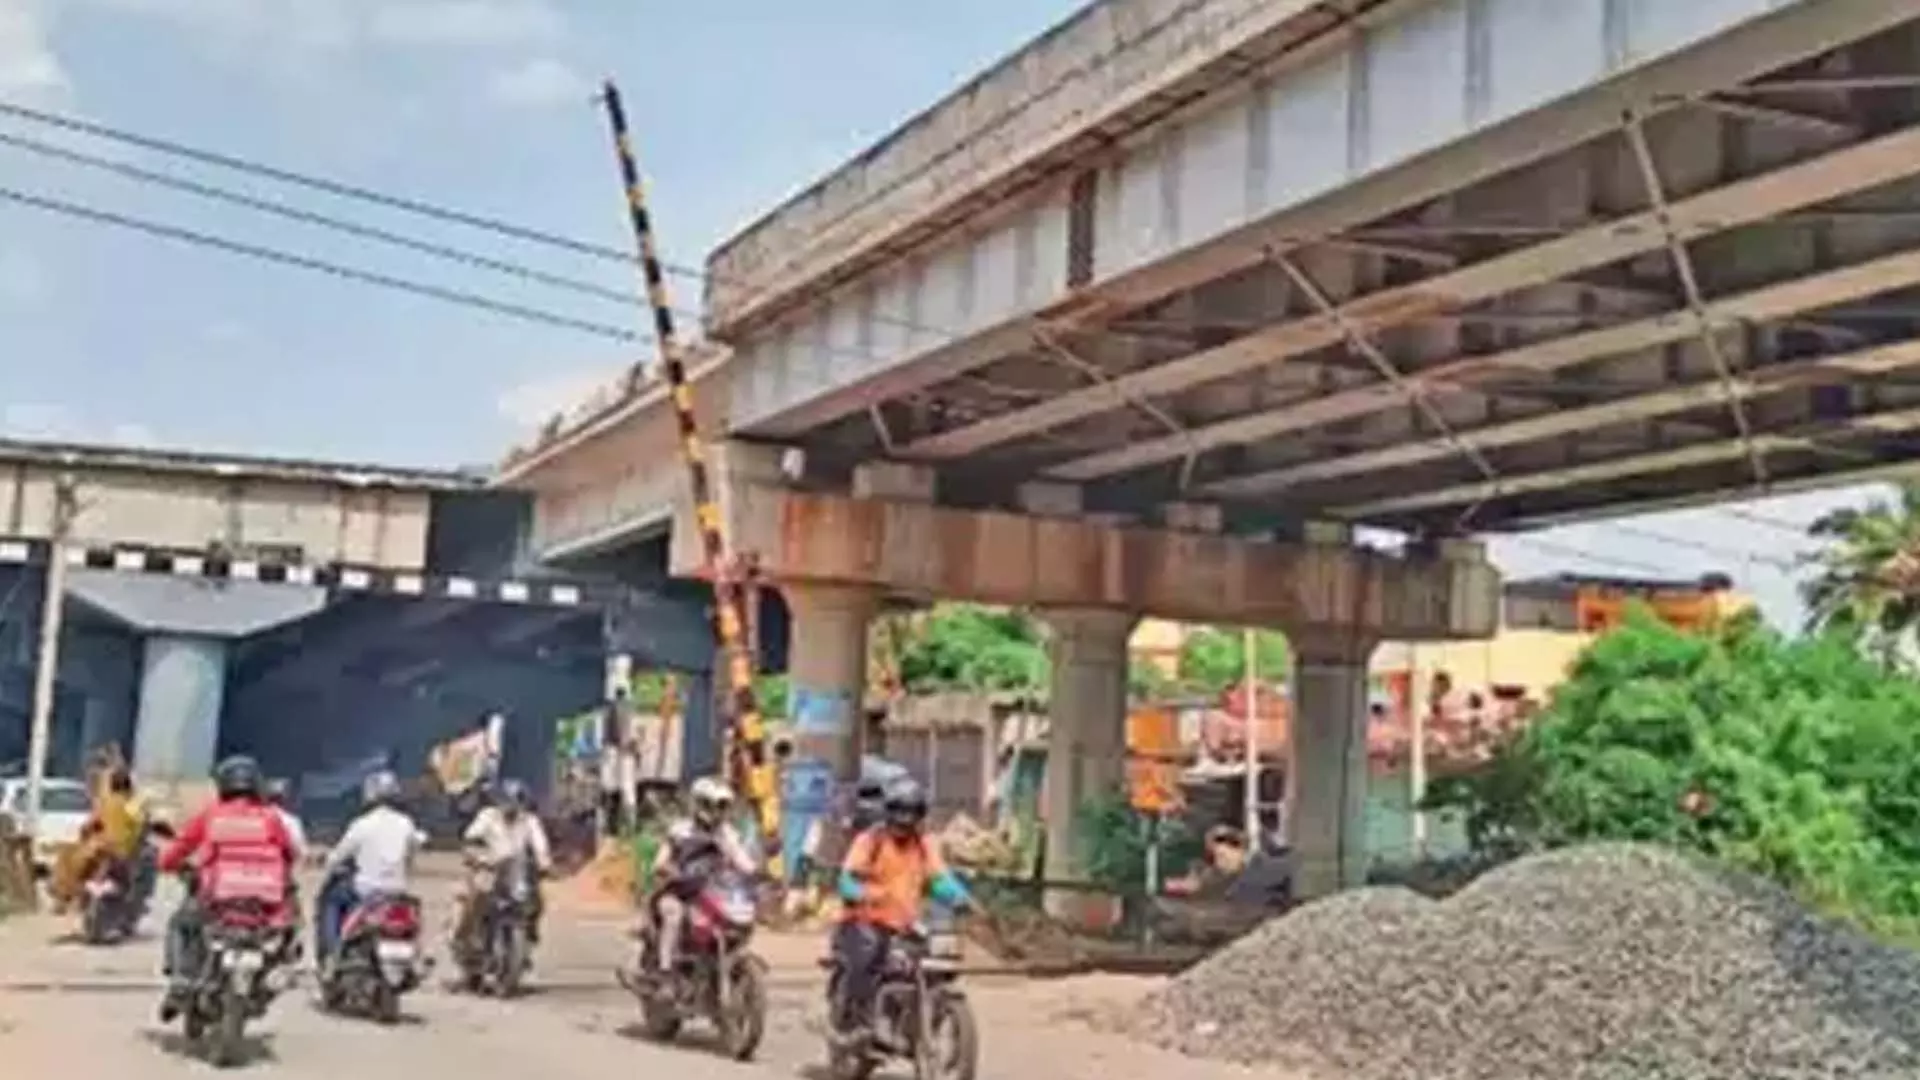 Tamil Nadu News : लालफीताशाही के कारण चेन्नई में प्रमुख सड़क परियोजनाएं कार्य रुका हुआ